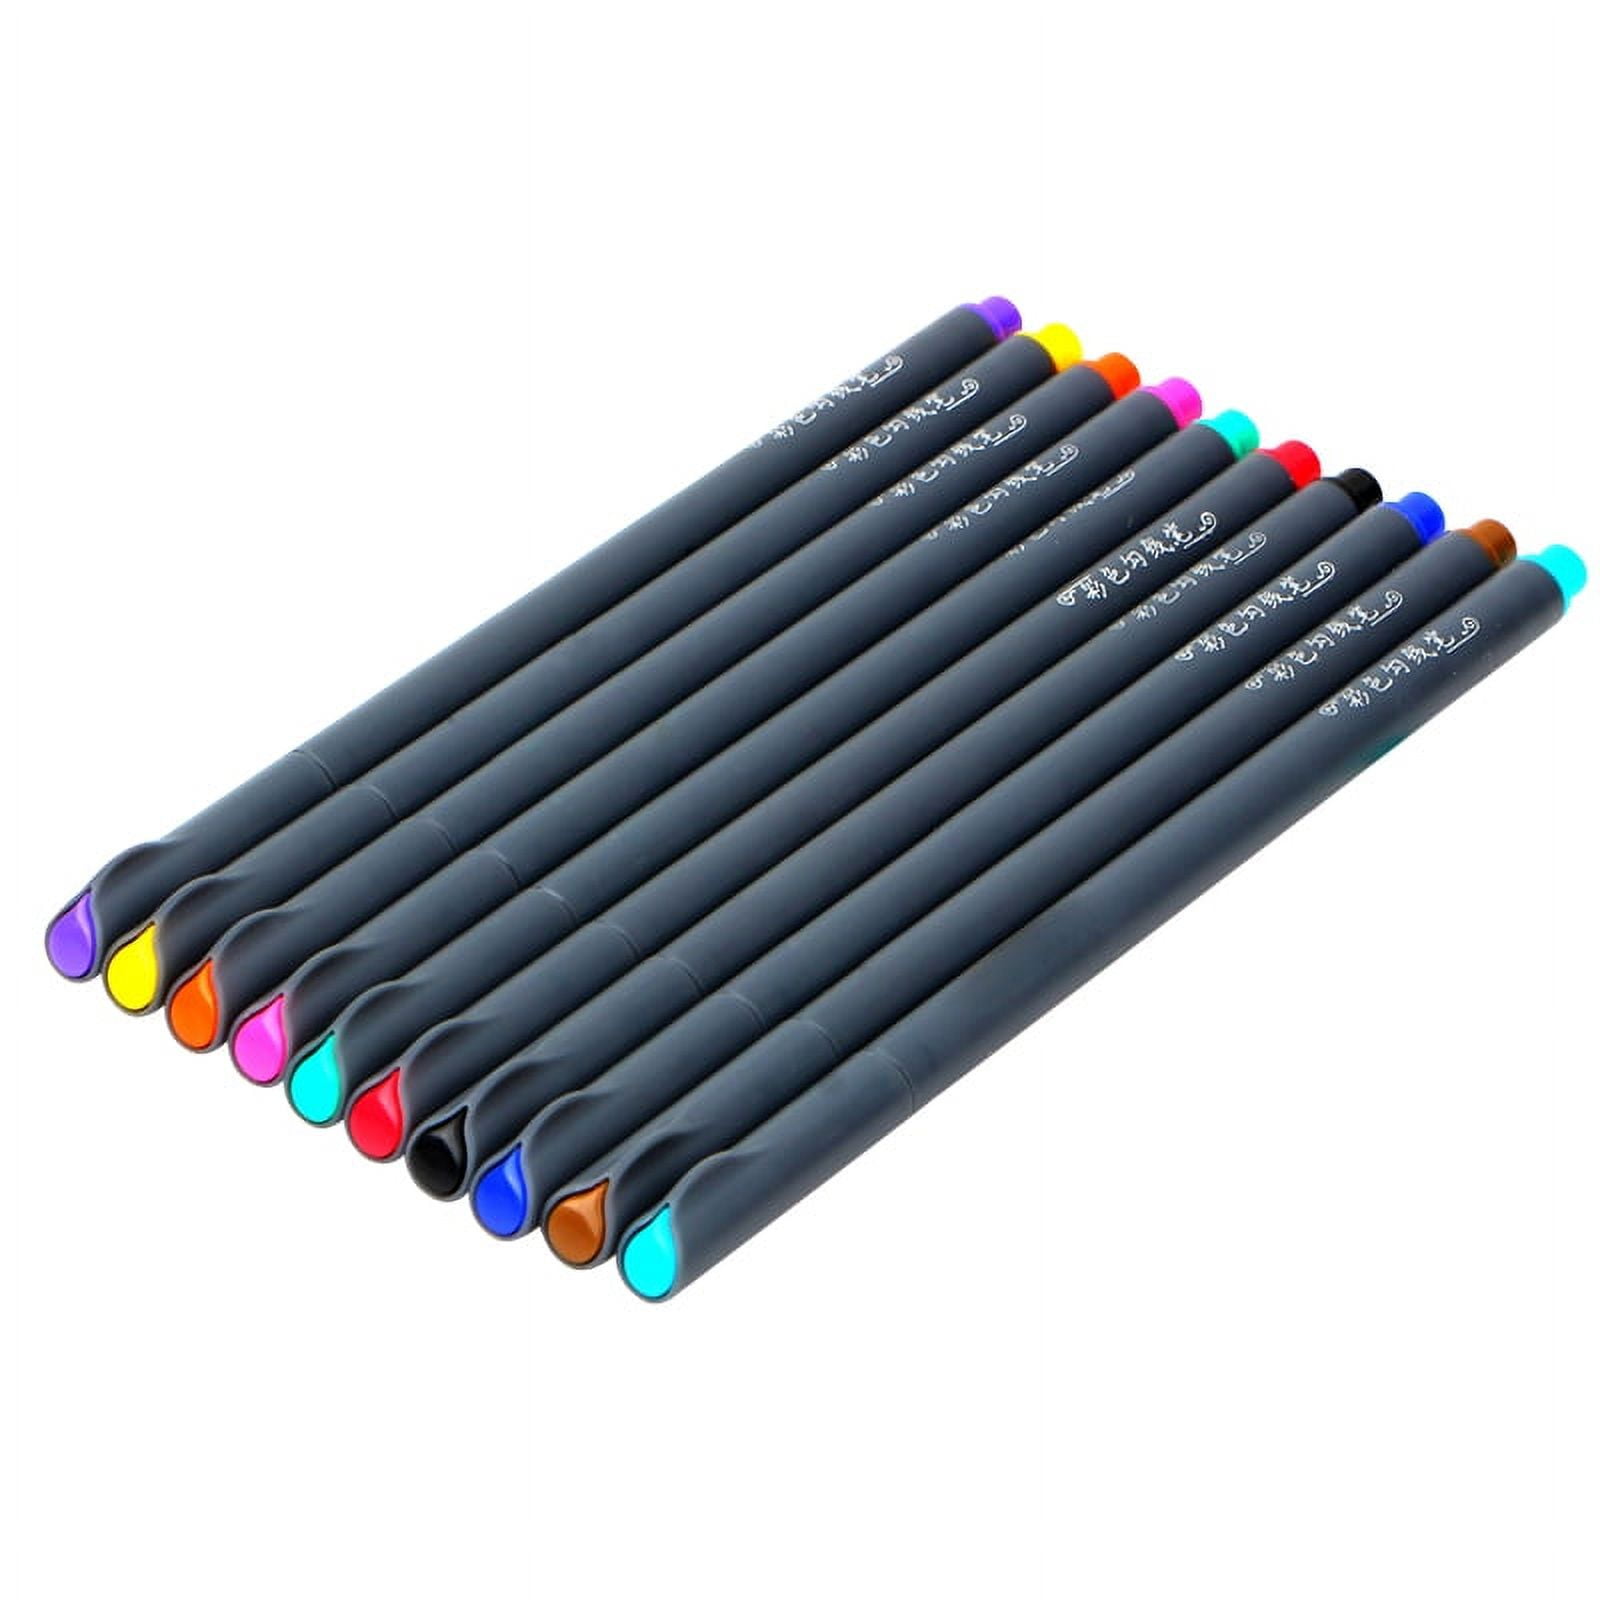 Sunacme 36 Color Fineliner Pens Set, 0.38 mm Ultra Fine Point